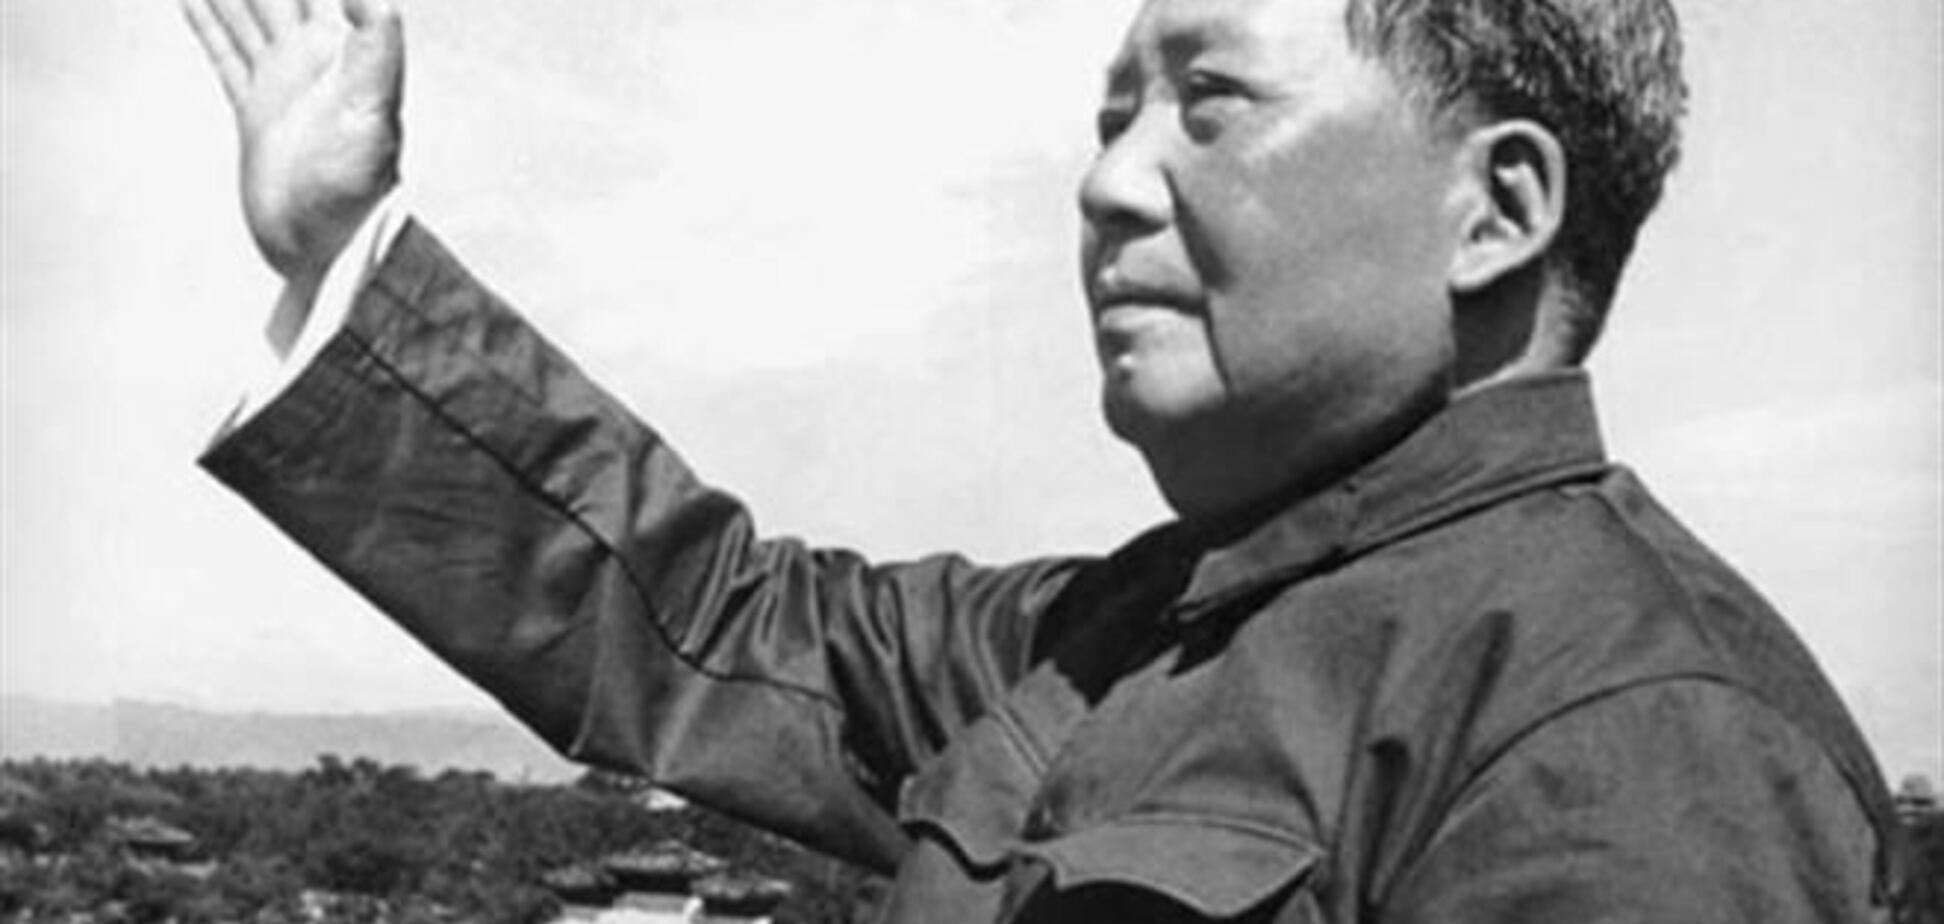 Подписанный Мао Цзэдуном конверт ушел с аукциона за $1 млн